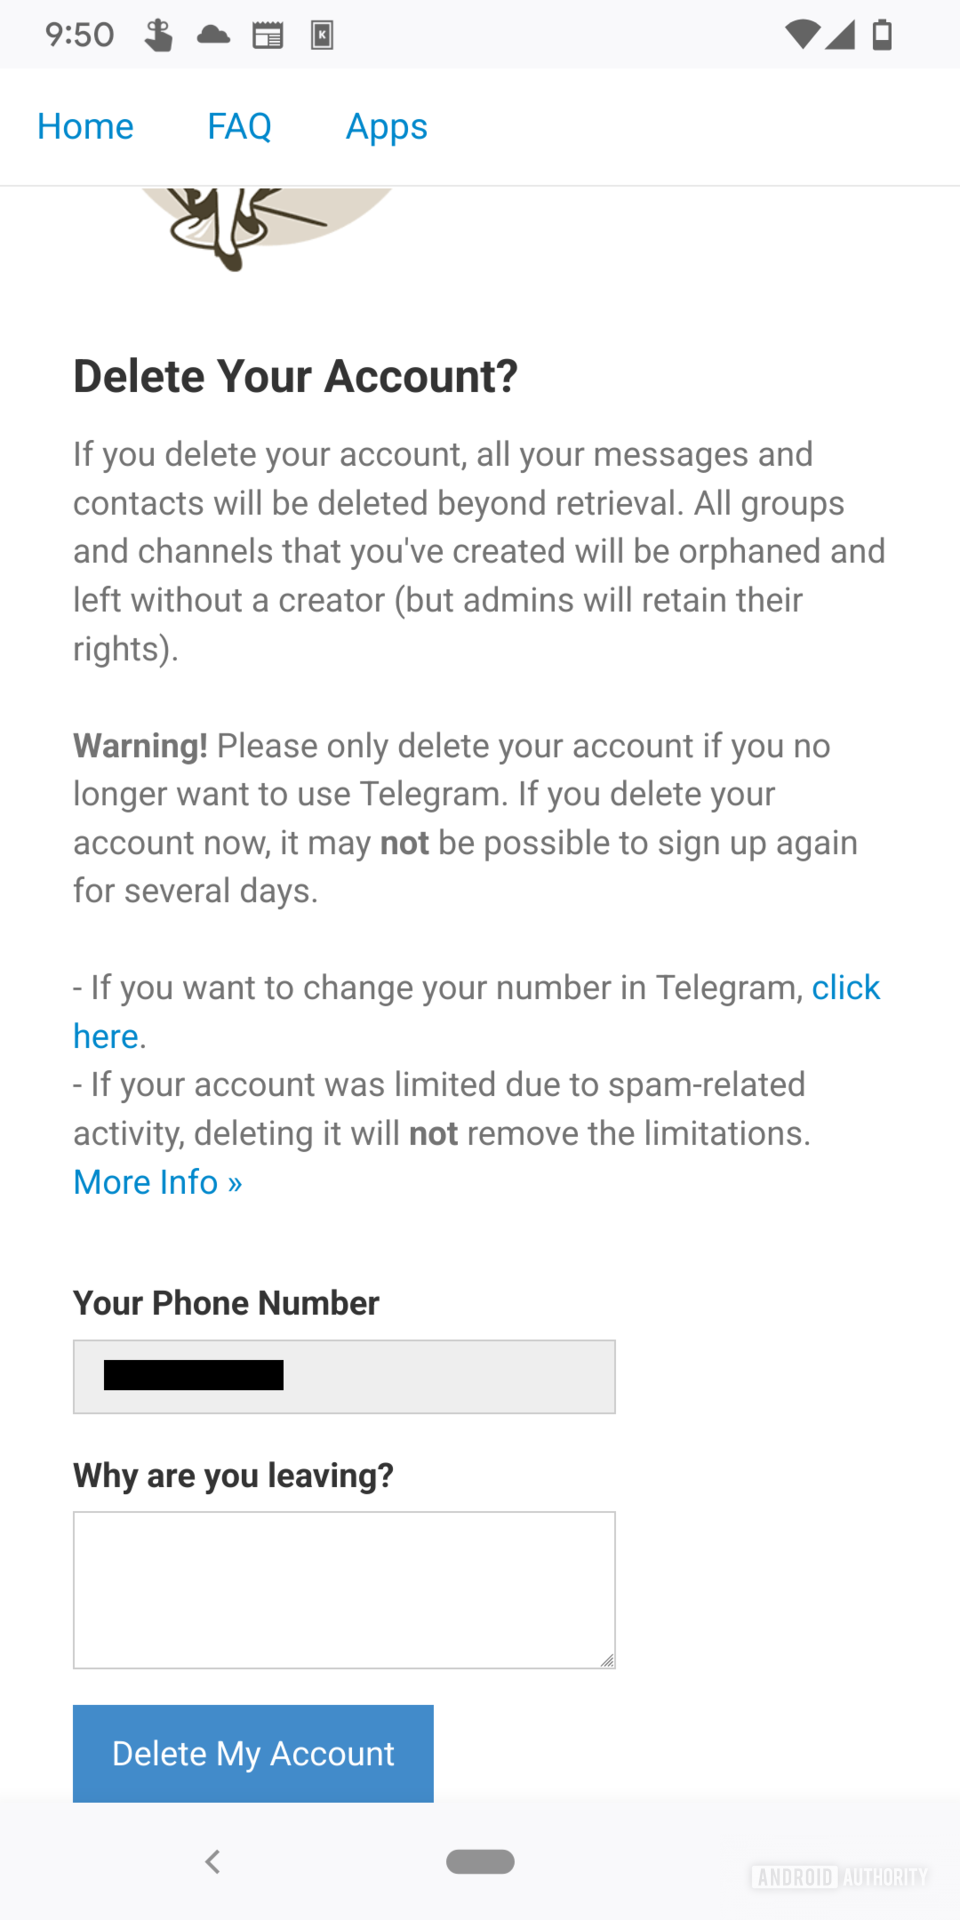 صفحة حذف الحساب في بوابة Telegram على الويب والتي تتضمن تحذيرًا يوضح تفاصيل ما يحدث عند حذف الحساب وحقل لإدخال سبب حذف الحساب أدناه وهو زر أزرق يقرأ 